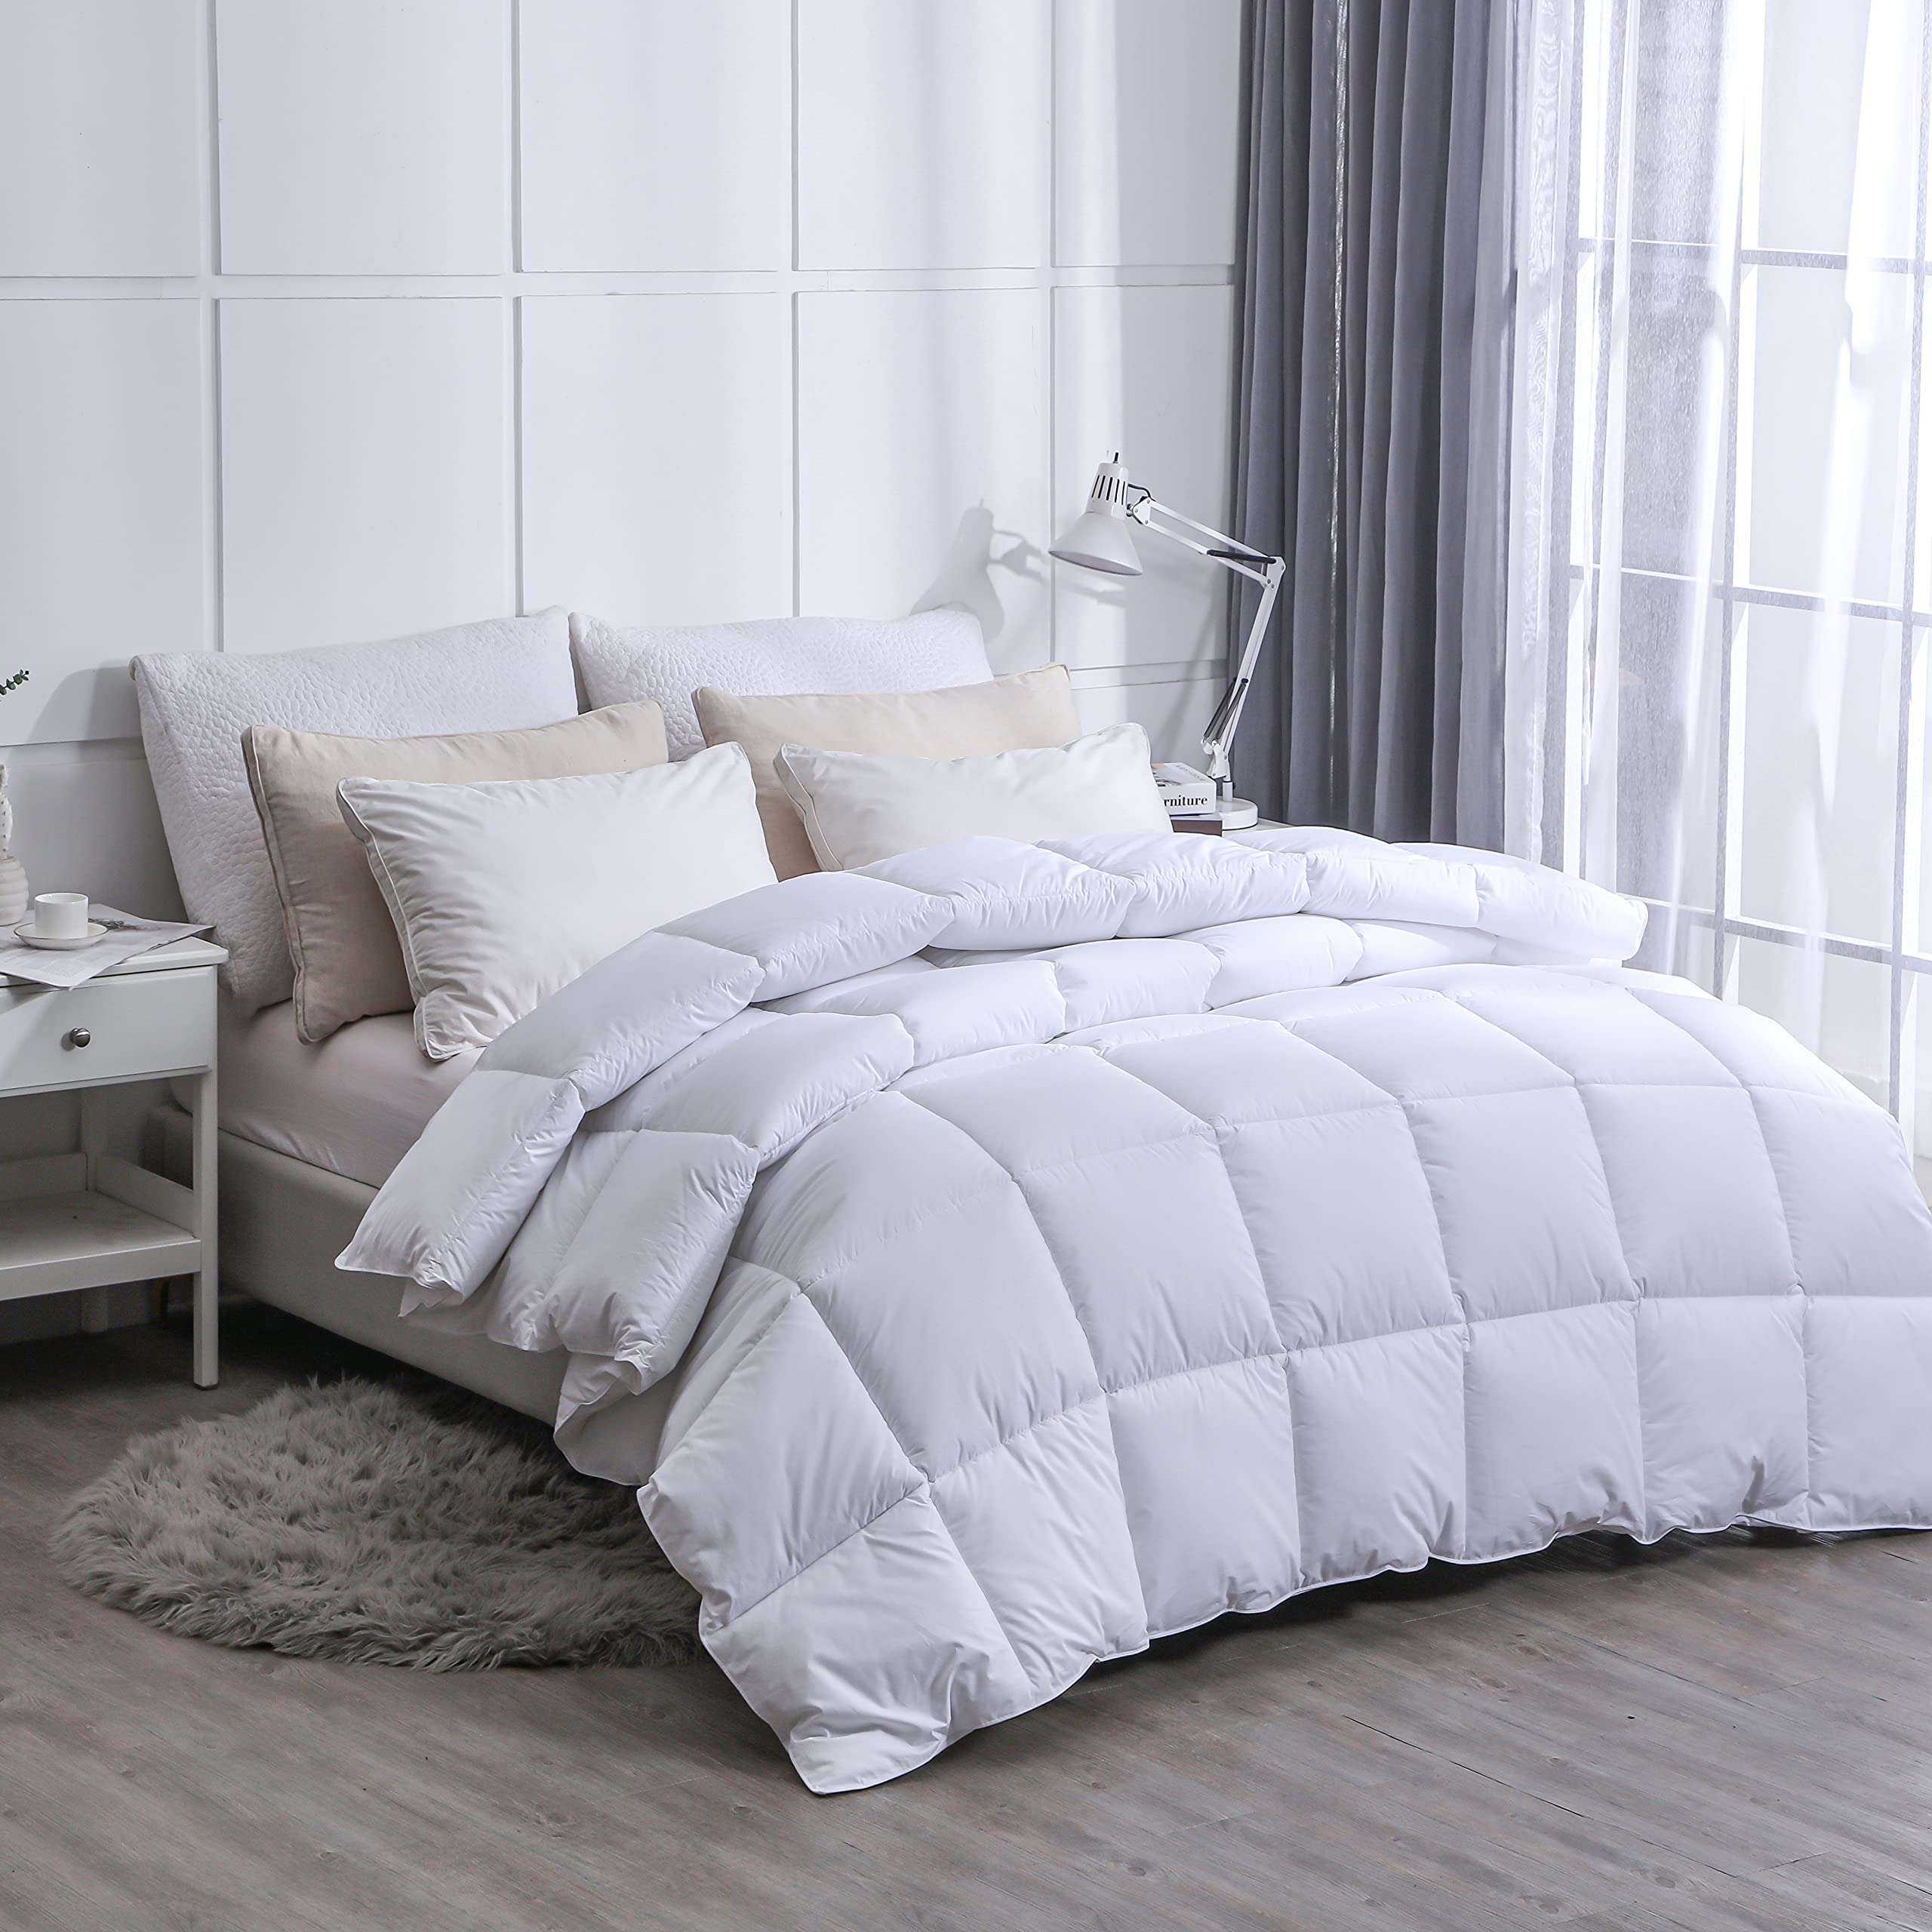 Amazon Brand - Umi Feather Down Duvet-Single,135×200cm, 100% Cotton, All Seasons, White.